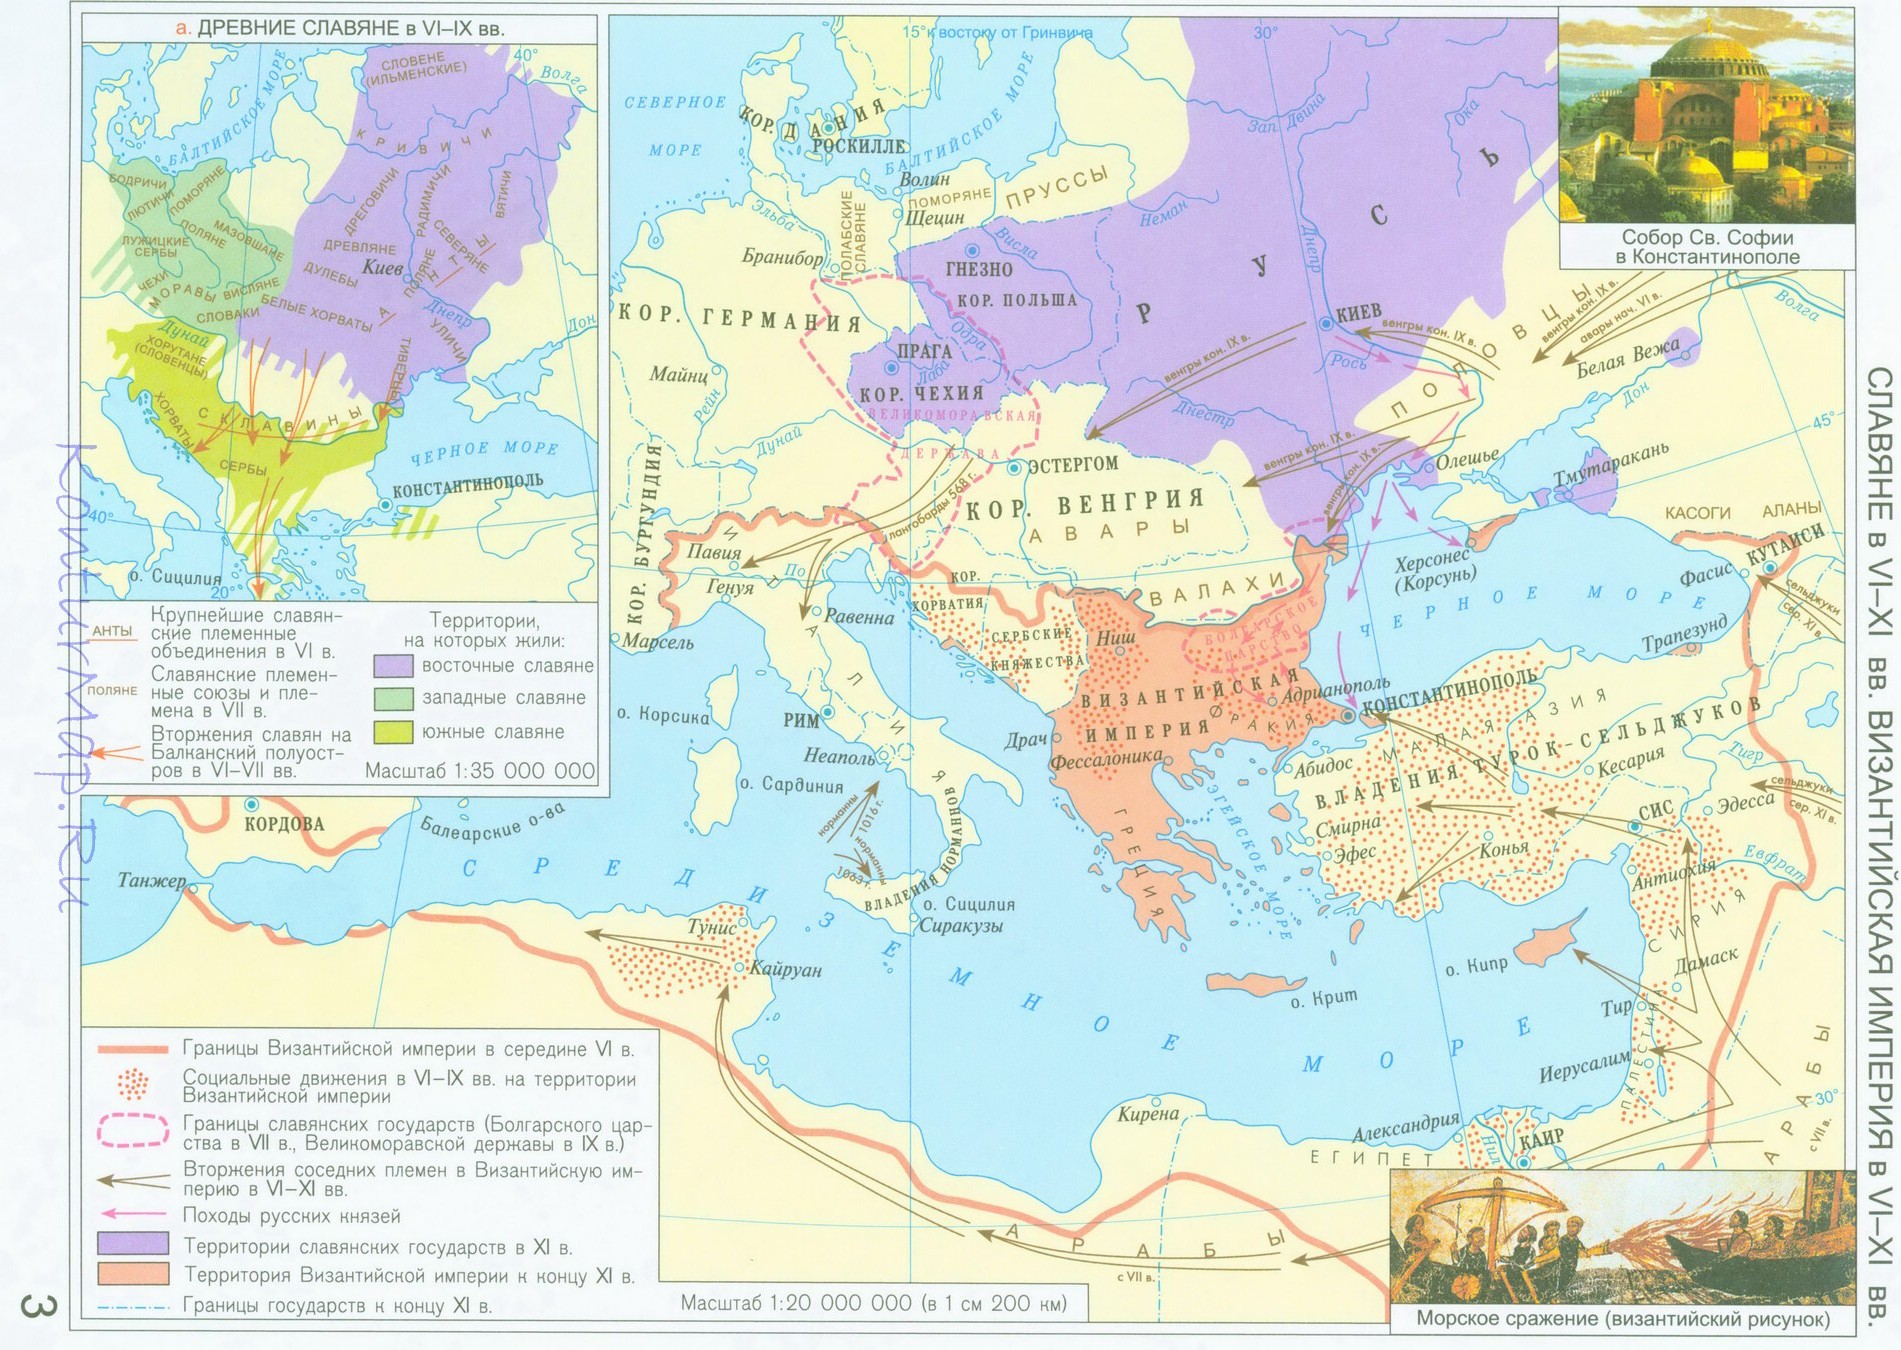 Гдз по истории контурные карты византийская империя ии славянев6-7веке